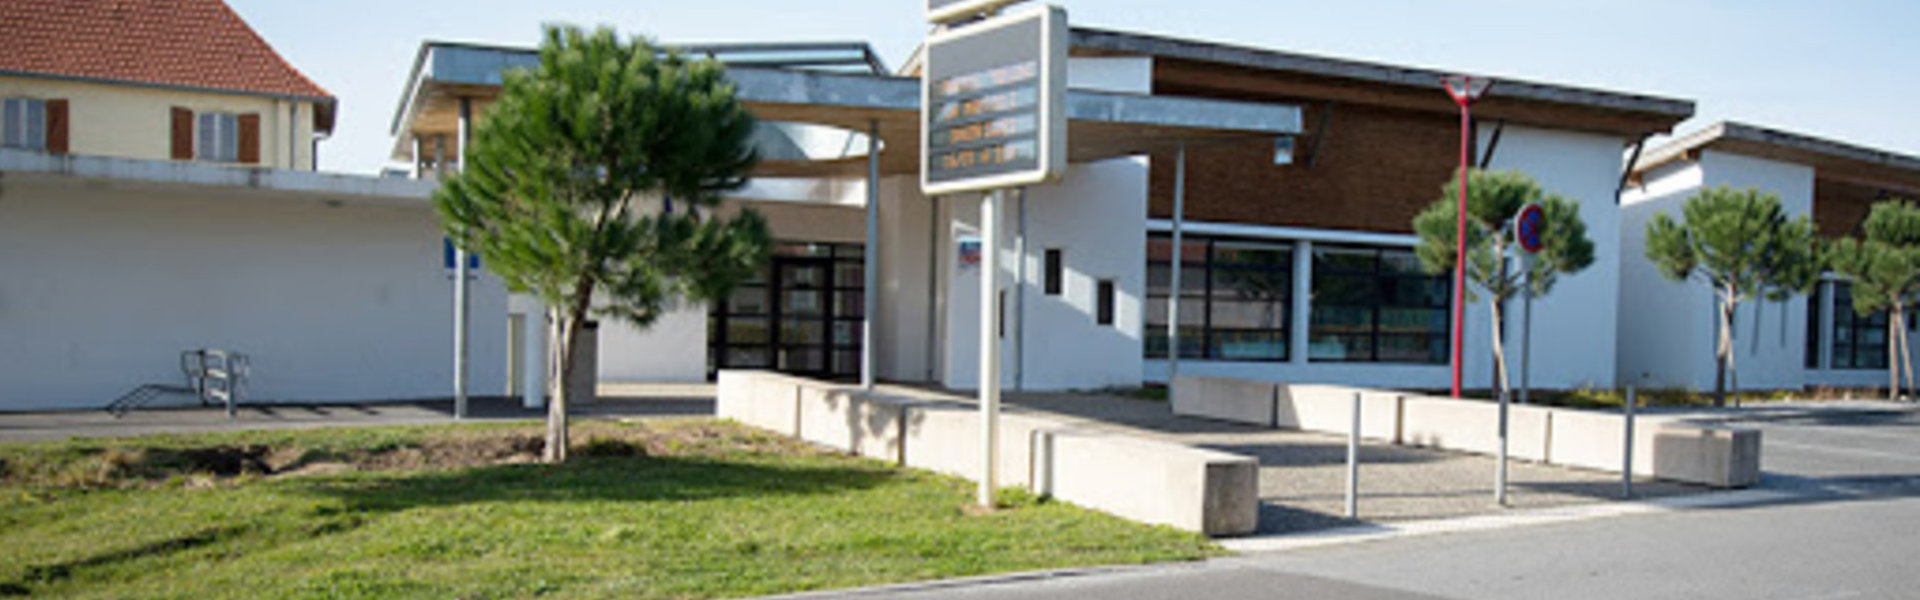 Commissions mairie commune Saint-Martin-de-Hinx aquitaine